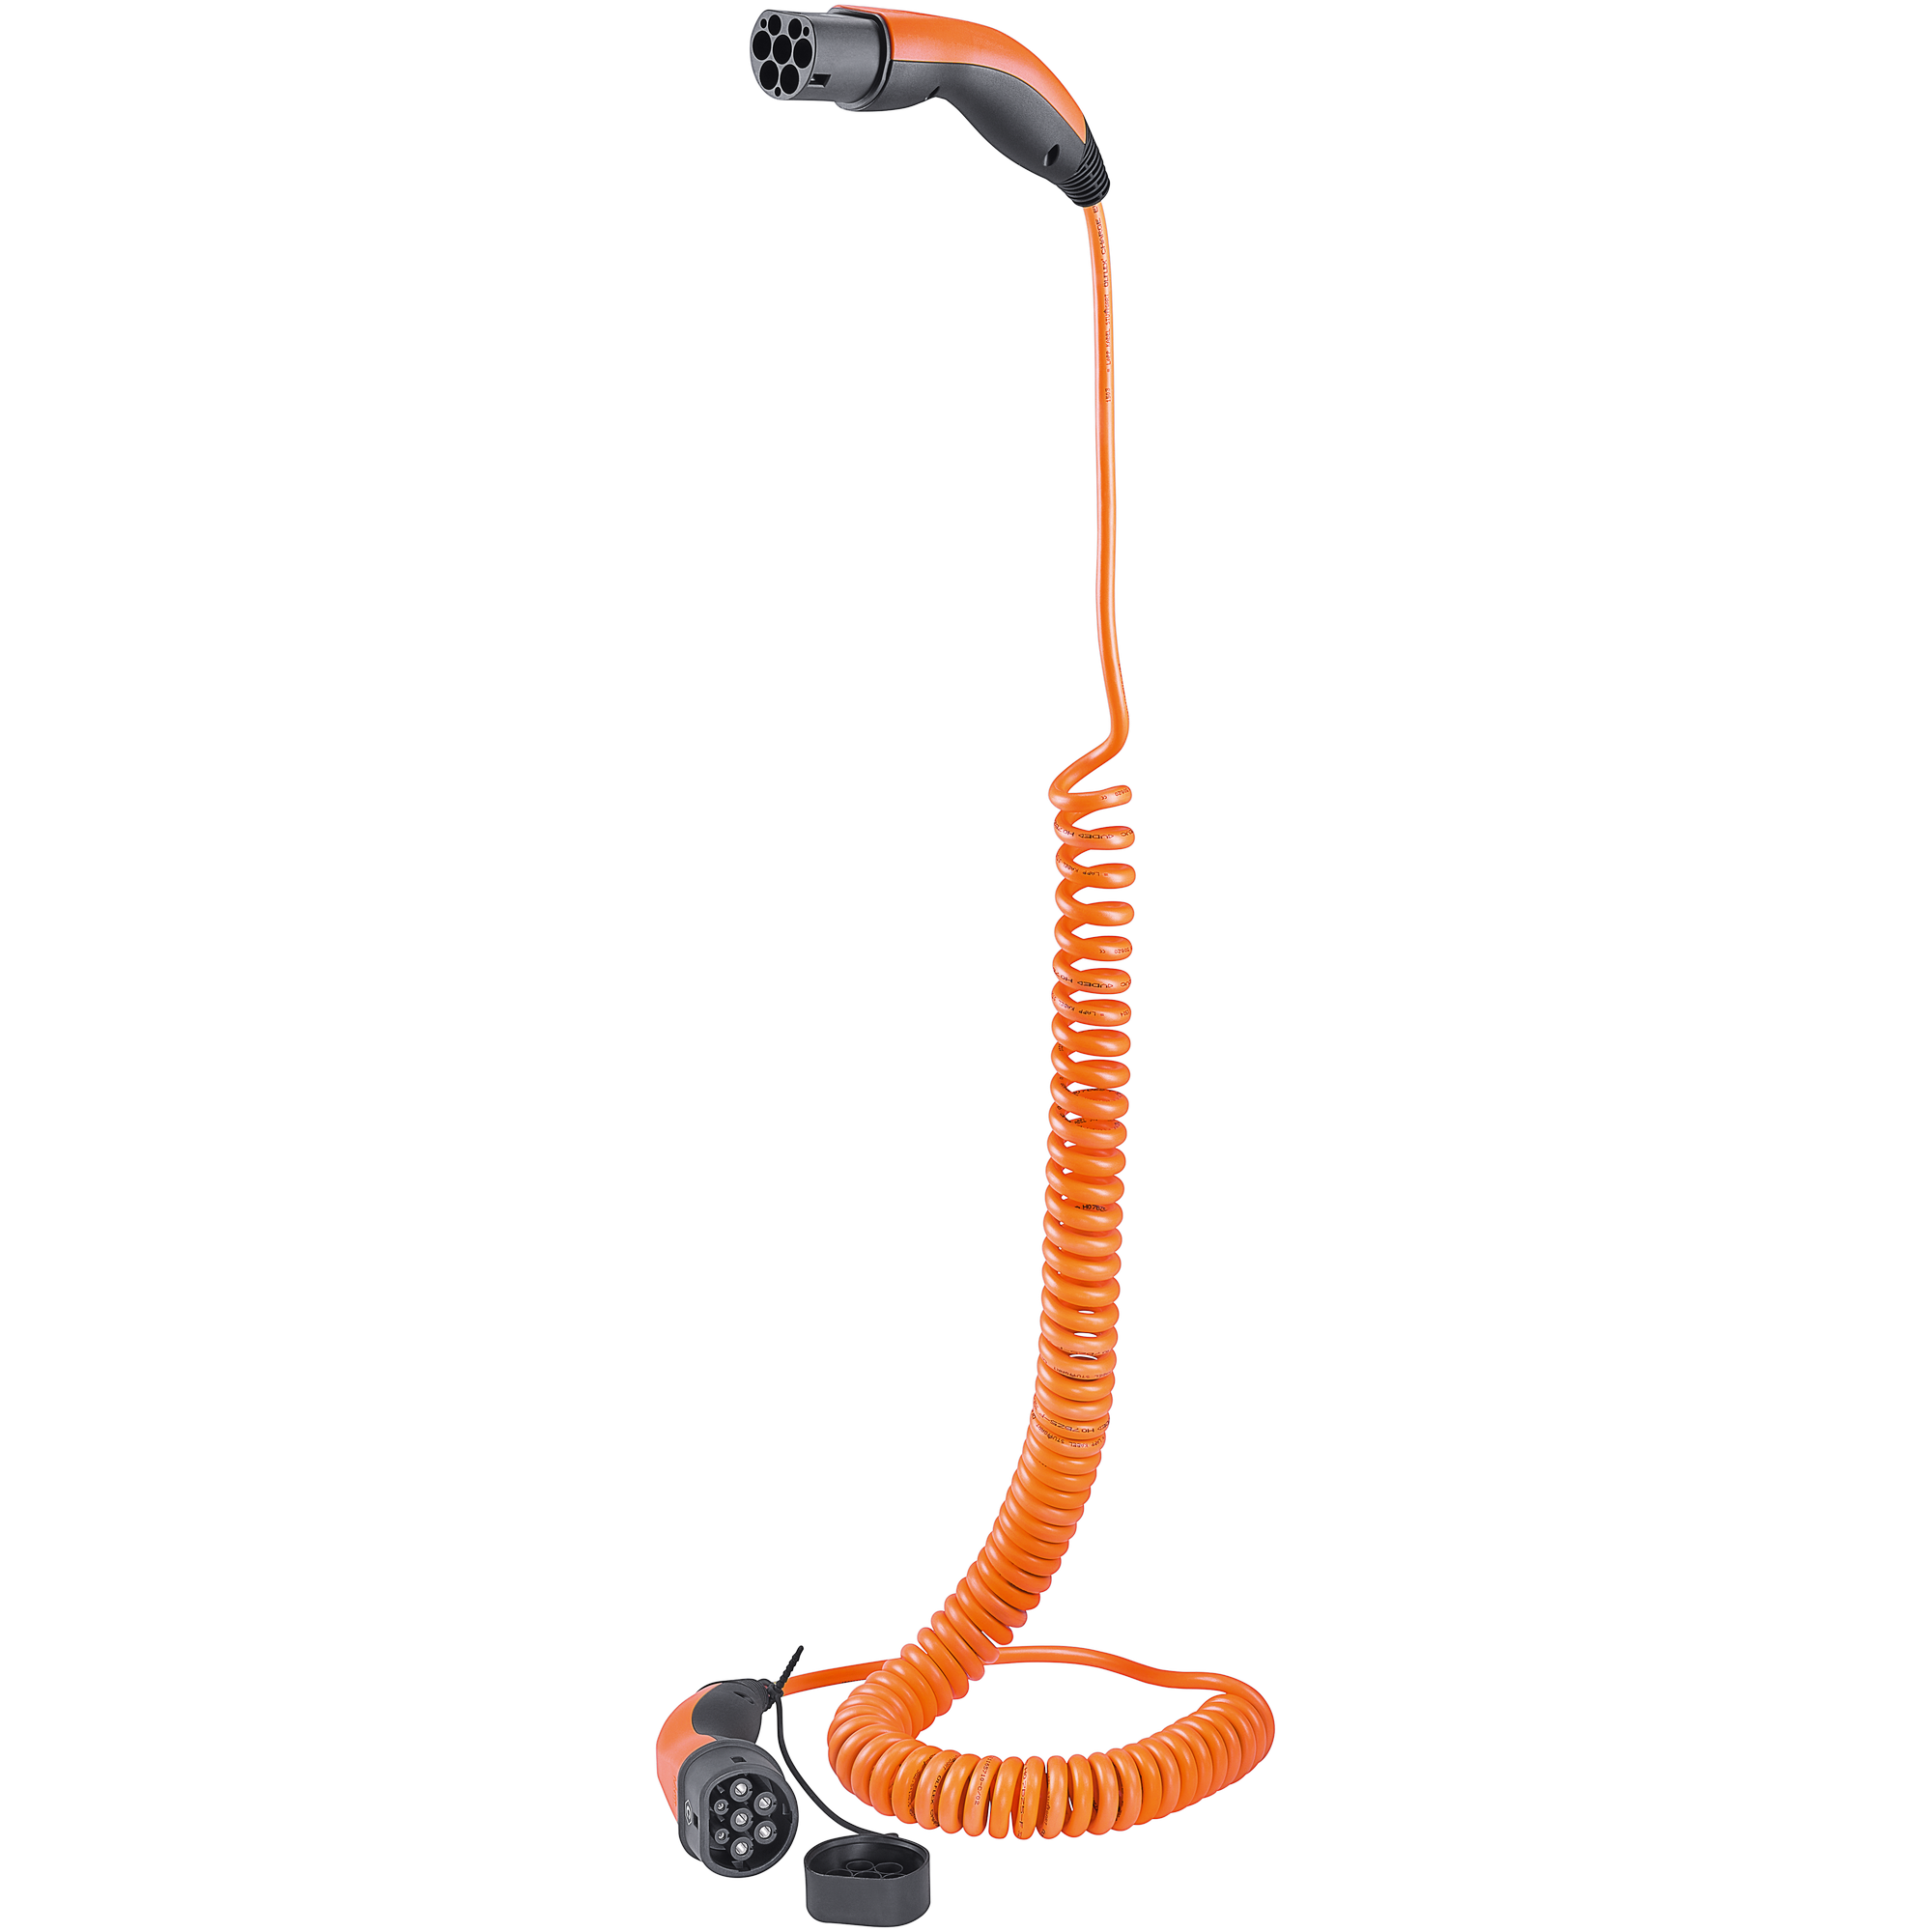 Spiral-Ladekabel orange Typ 2, bis zu 11 kW, 5 m für Elektro- und Hybridfahrzeuge + product picture